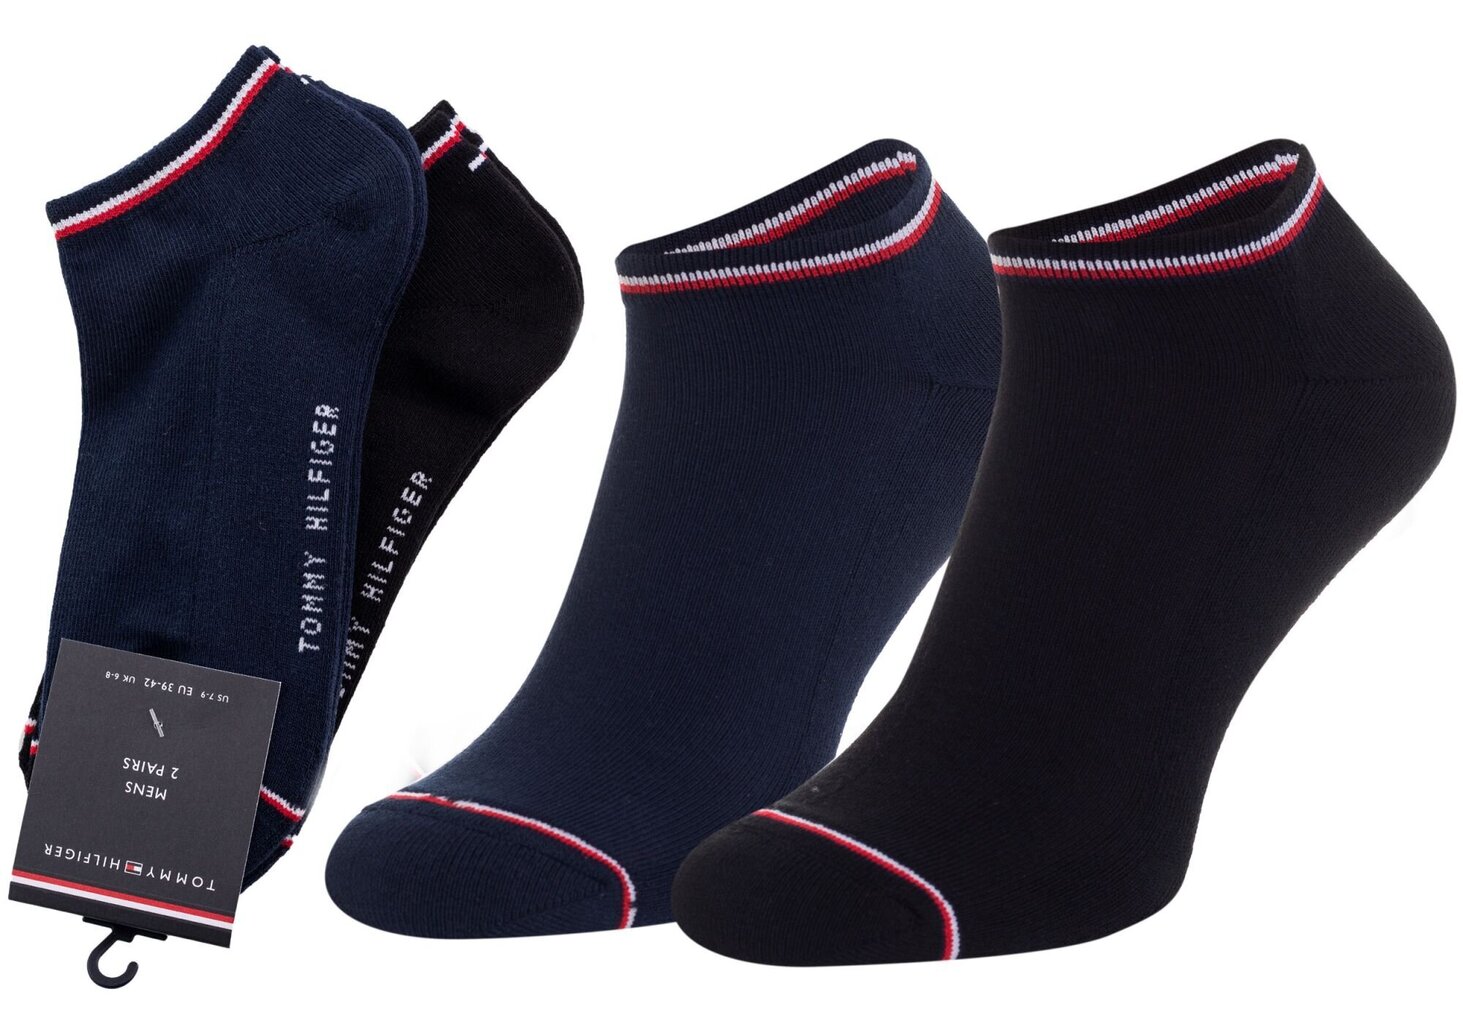 Vyriškos kojinės TOMMY HILFIGER, 2 poros, tamsiai mėlynos/juodos 40957 kaina ir informacija | Vyriškos kojinės | pigu.lt